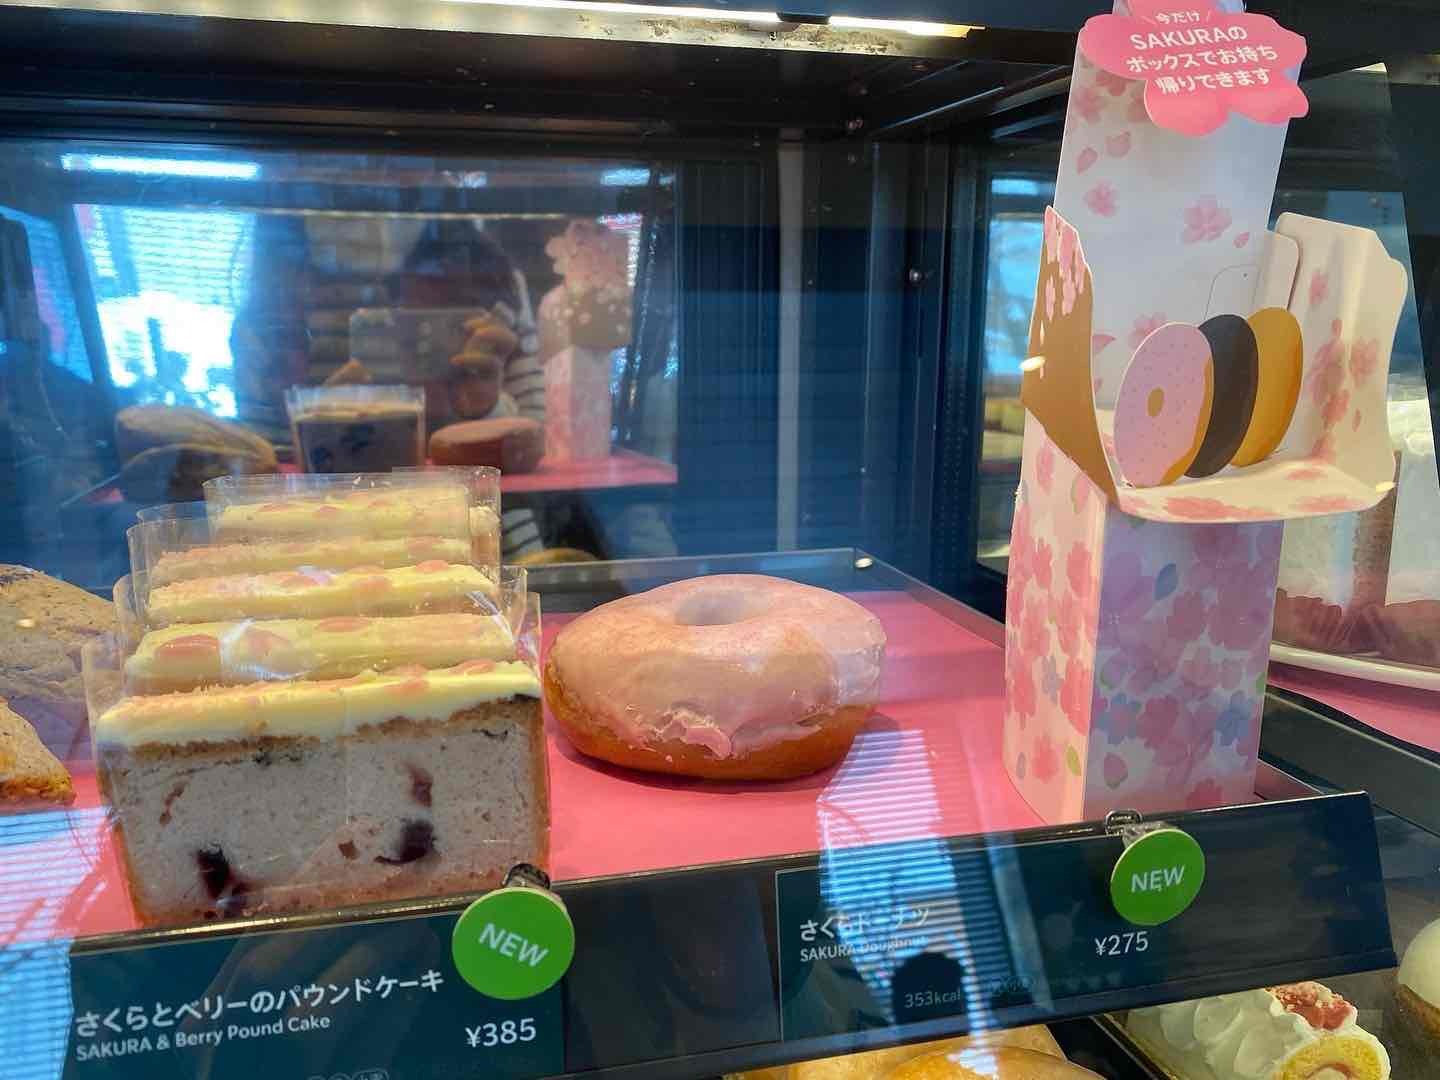 「さくらとベリーのパウンドケーキ」¥385(税込) / 「さくらドーナツ」¥275(税込)